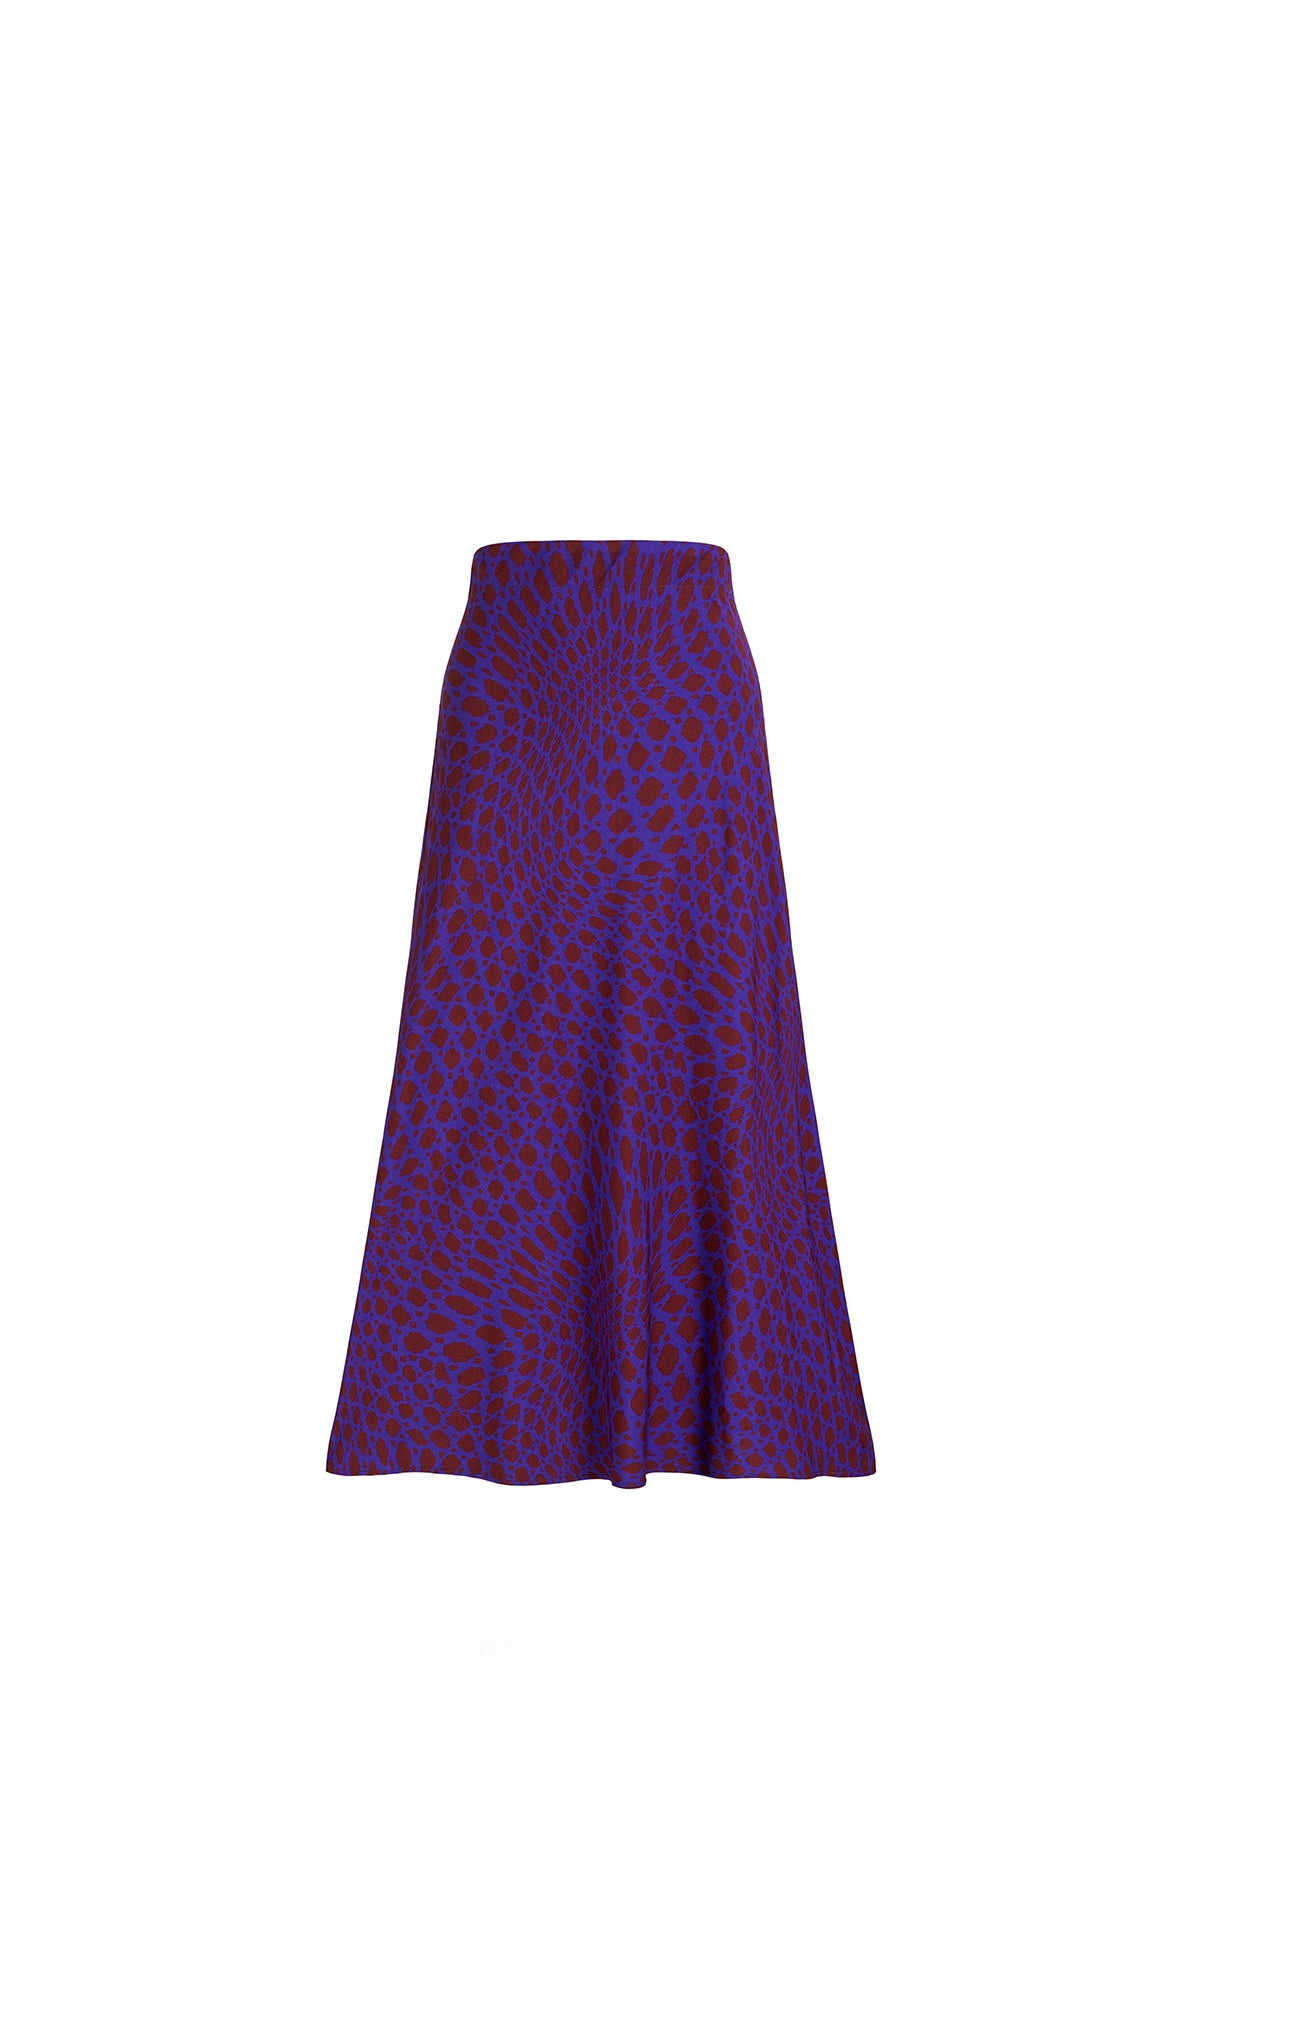 CABERNET A-line skirt 'warp polka dot'